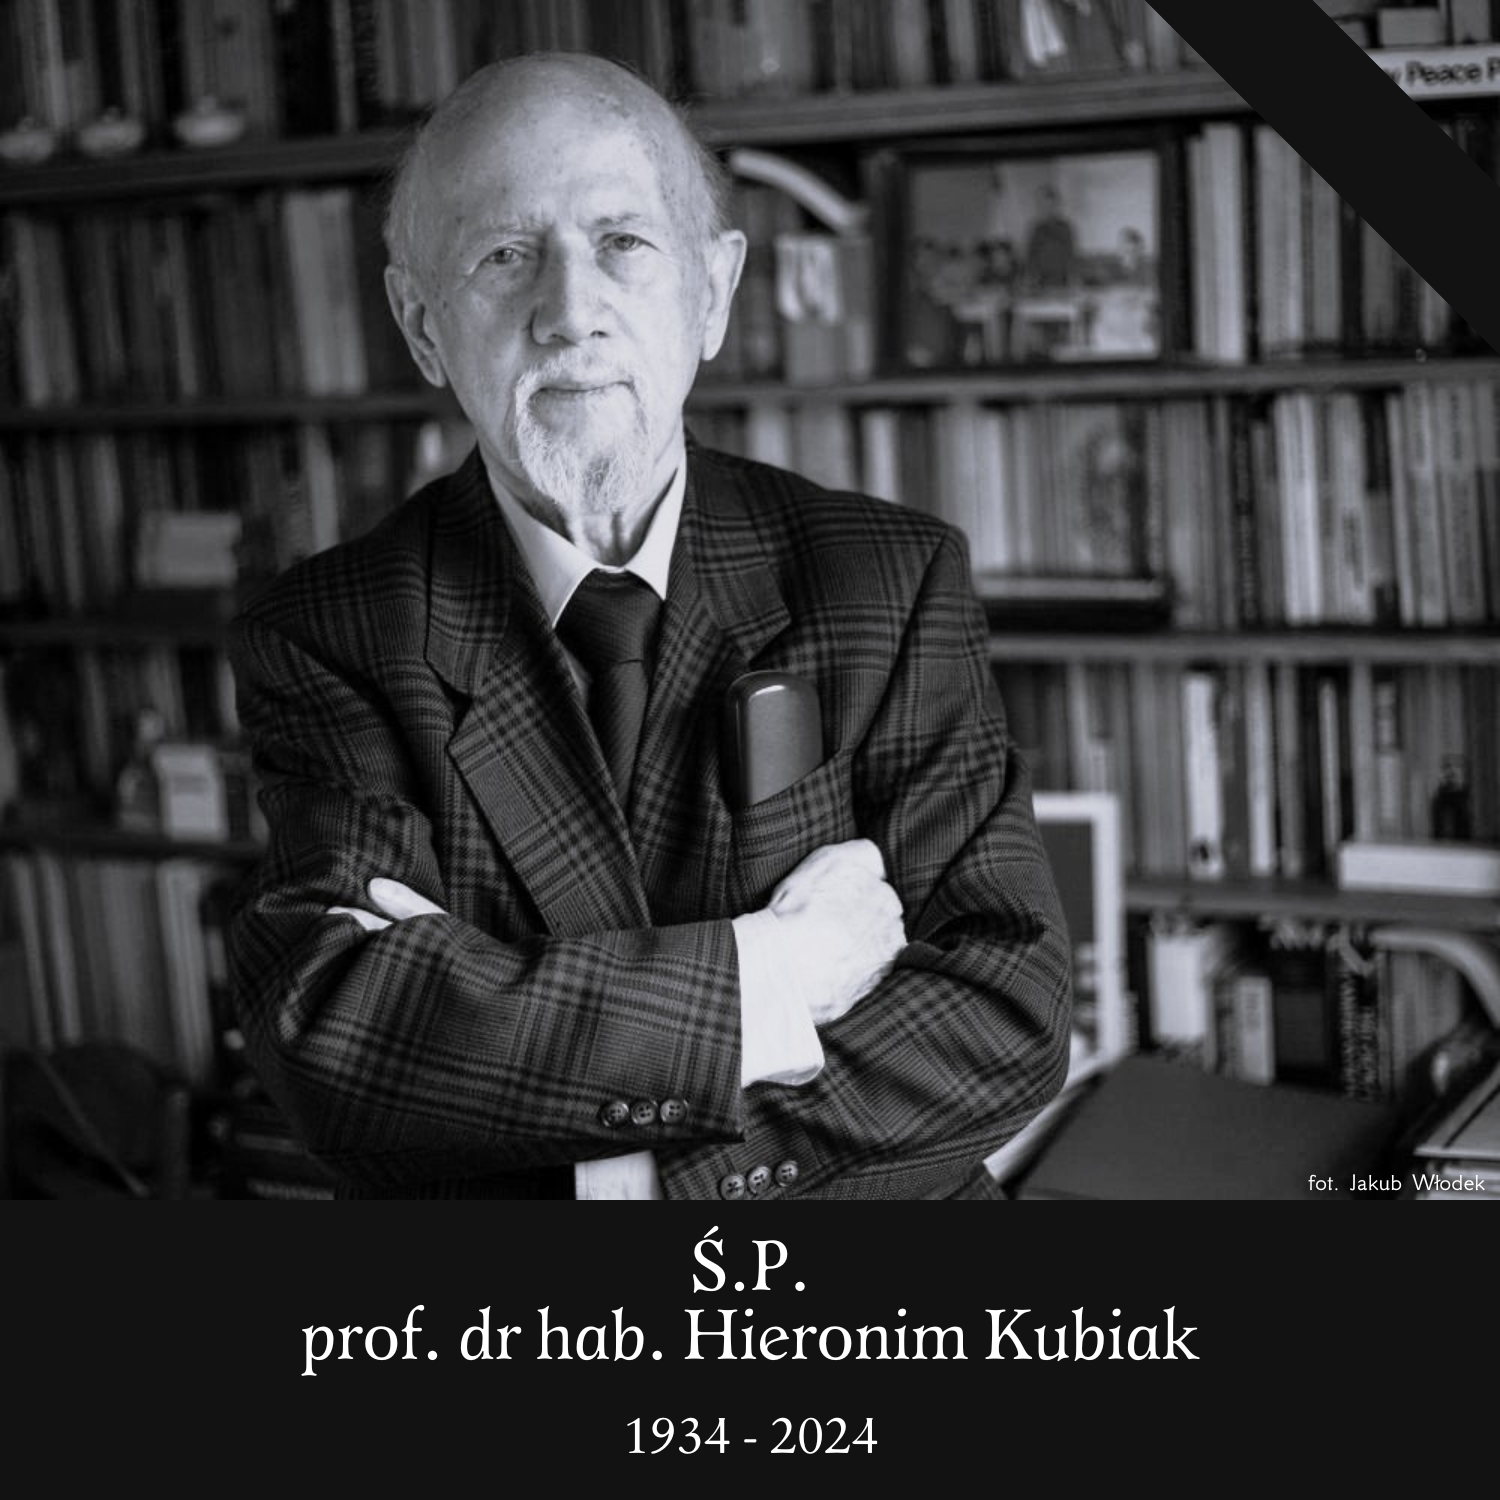 czarno-biała fotografia przedstawiająca Profesora Hieronima Kubiaka. Poniżej imię i nazwisko oraz data urodzenia i śmierci